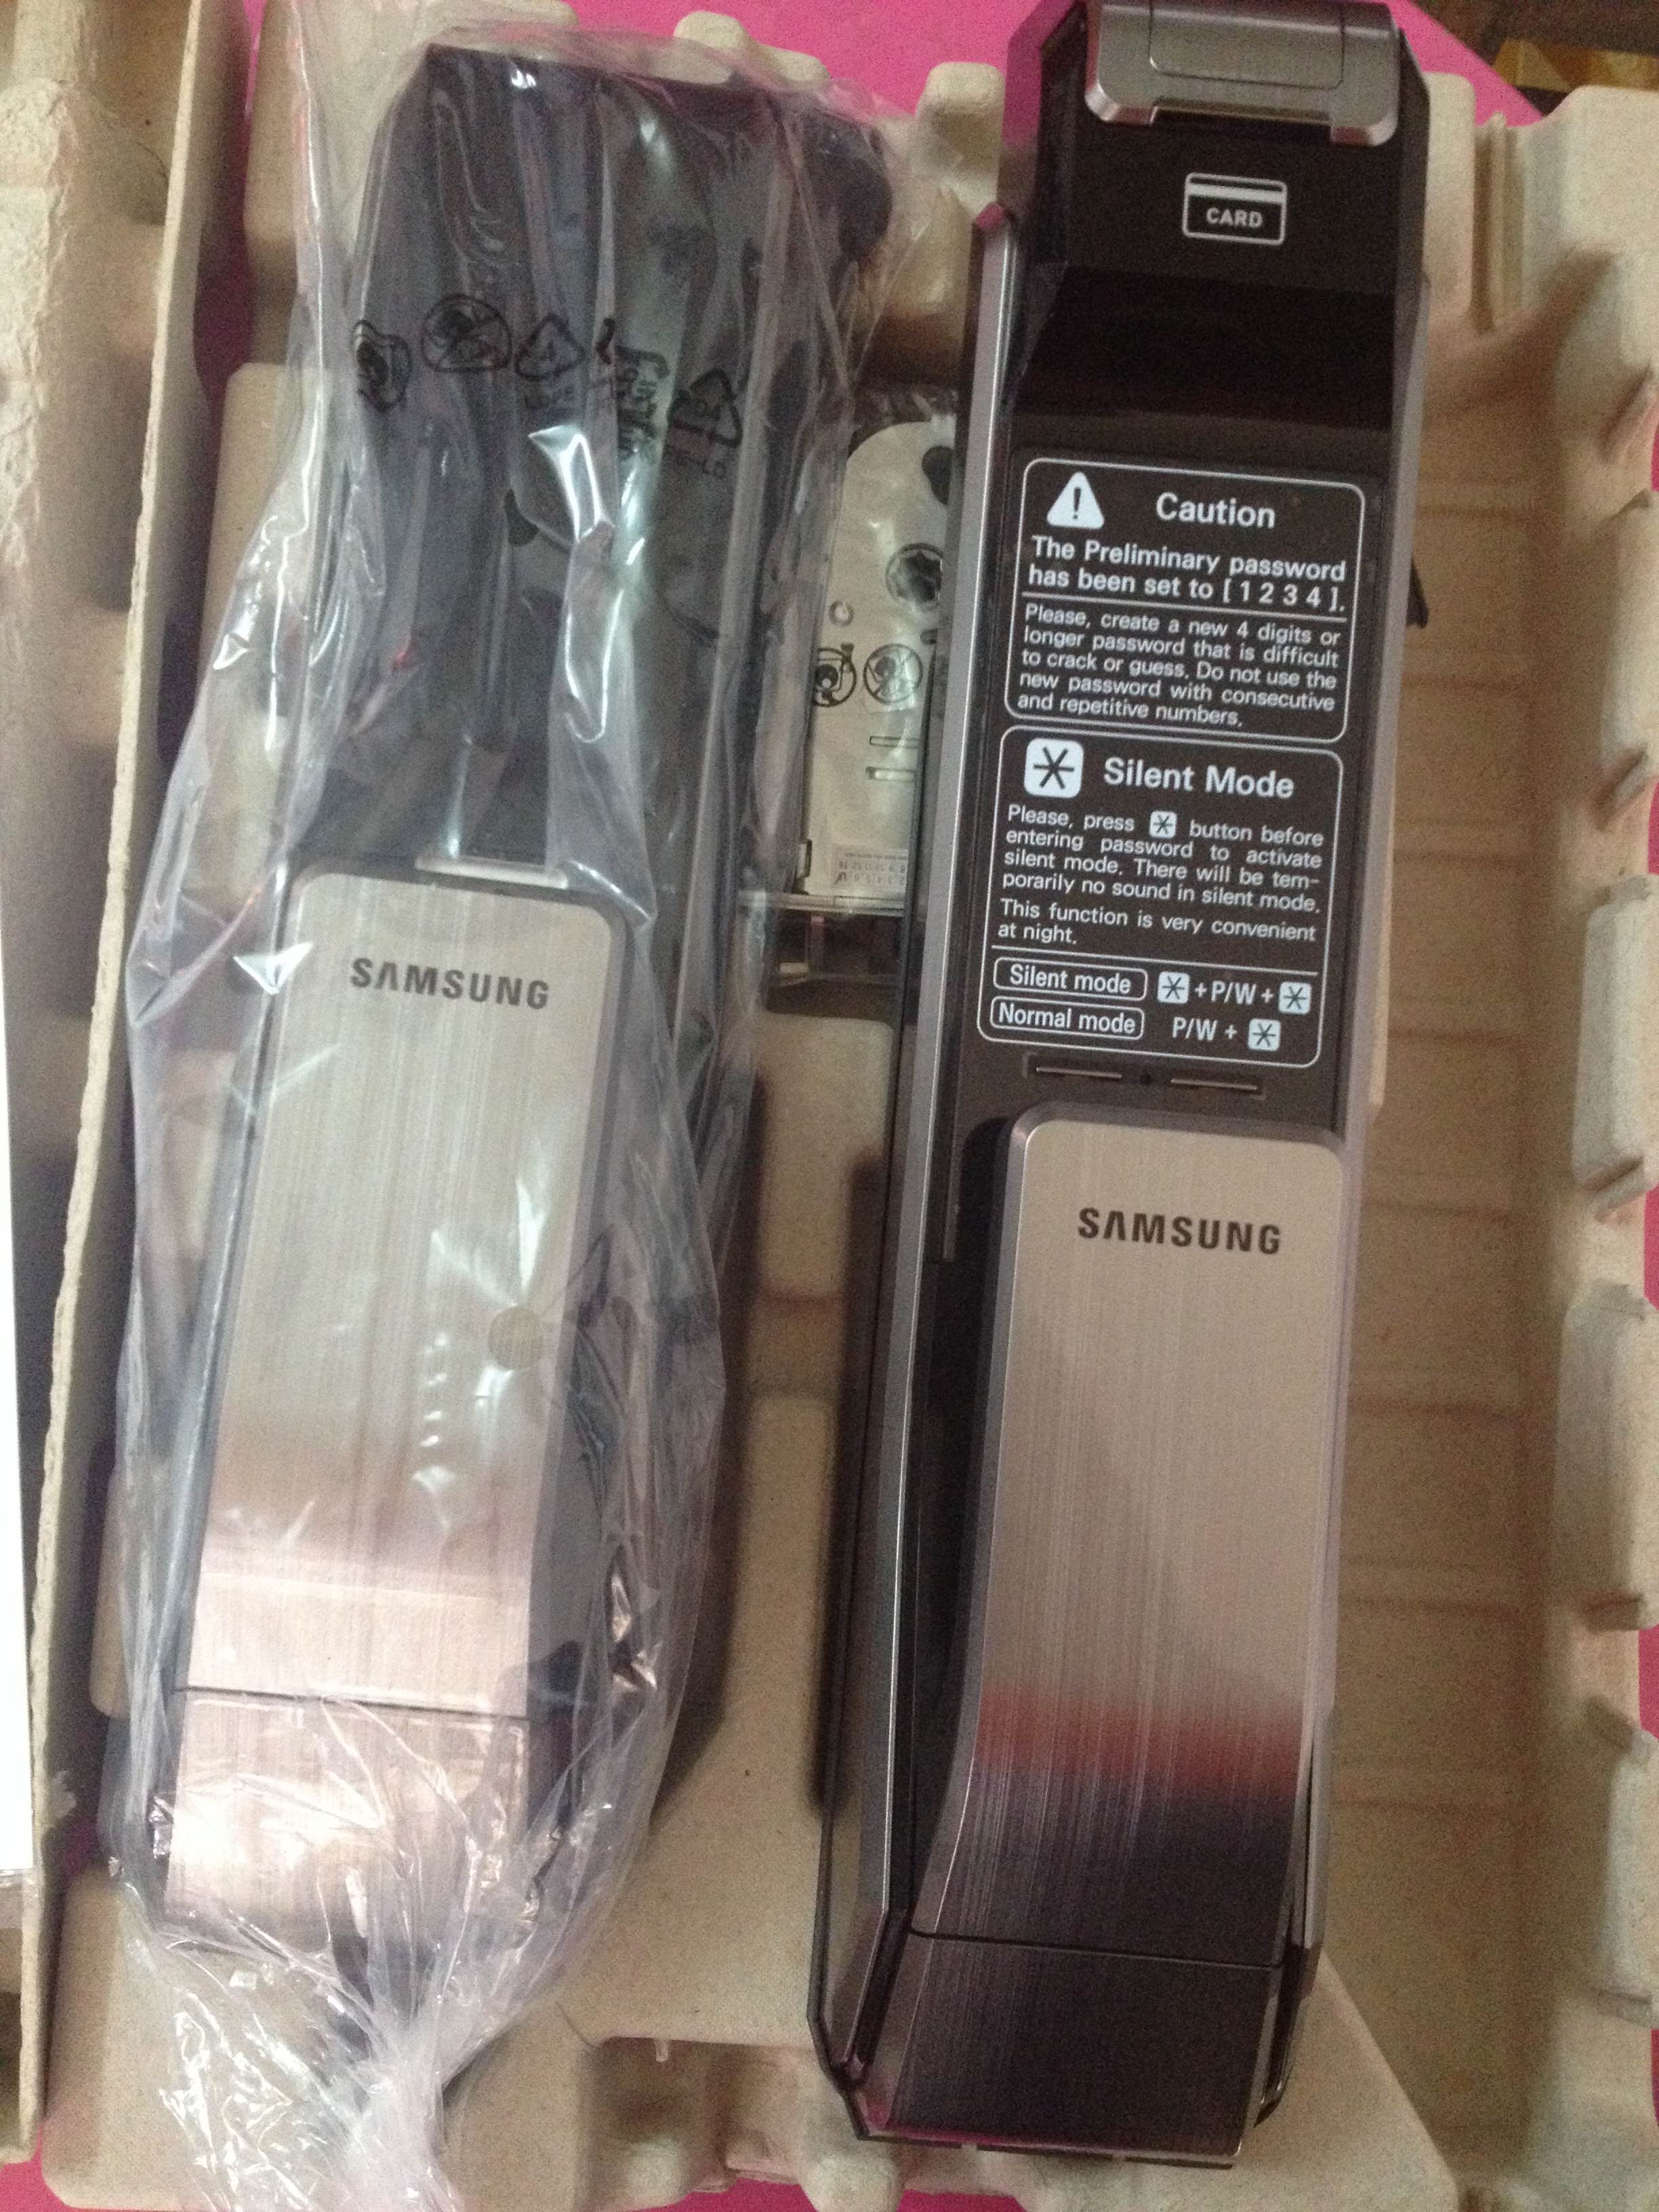 thanh lý khóa cửa vân tay thẻ từ Samsung